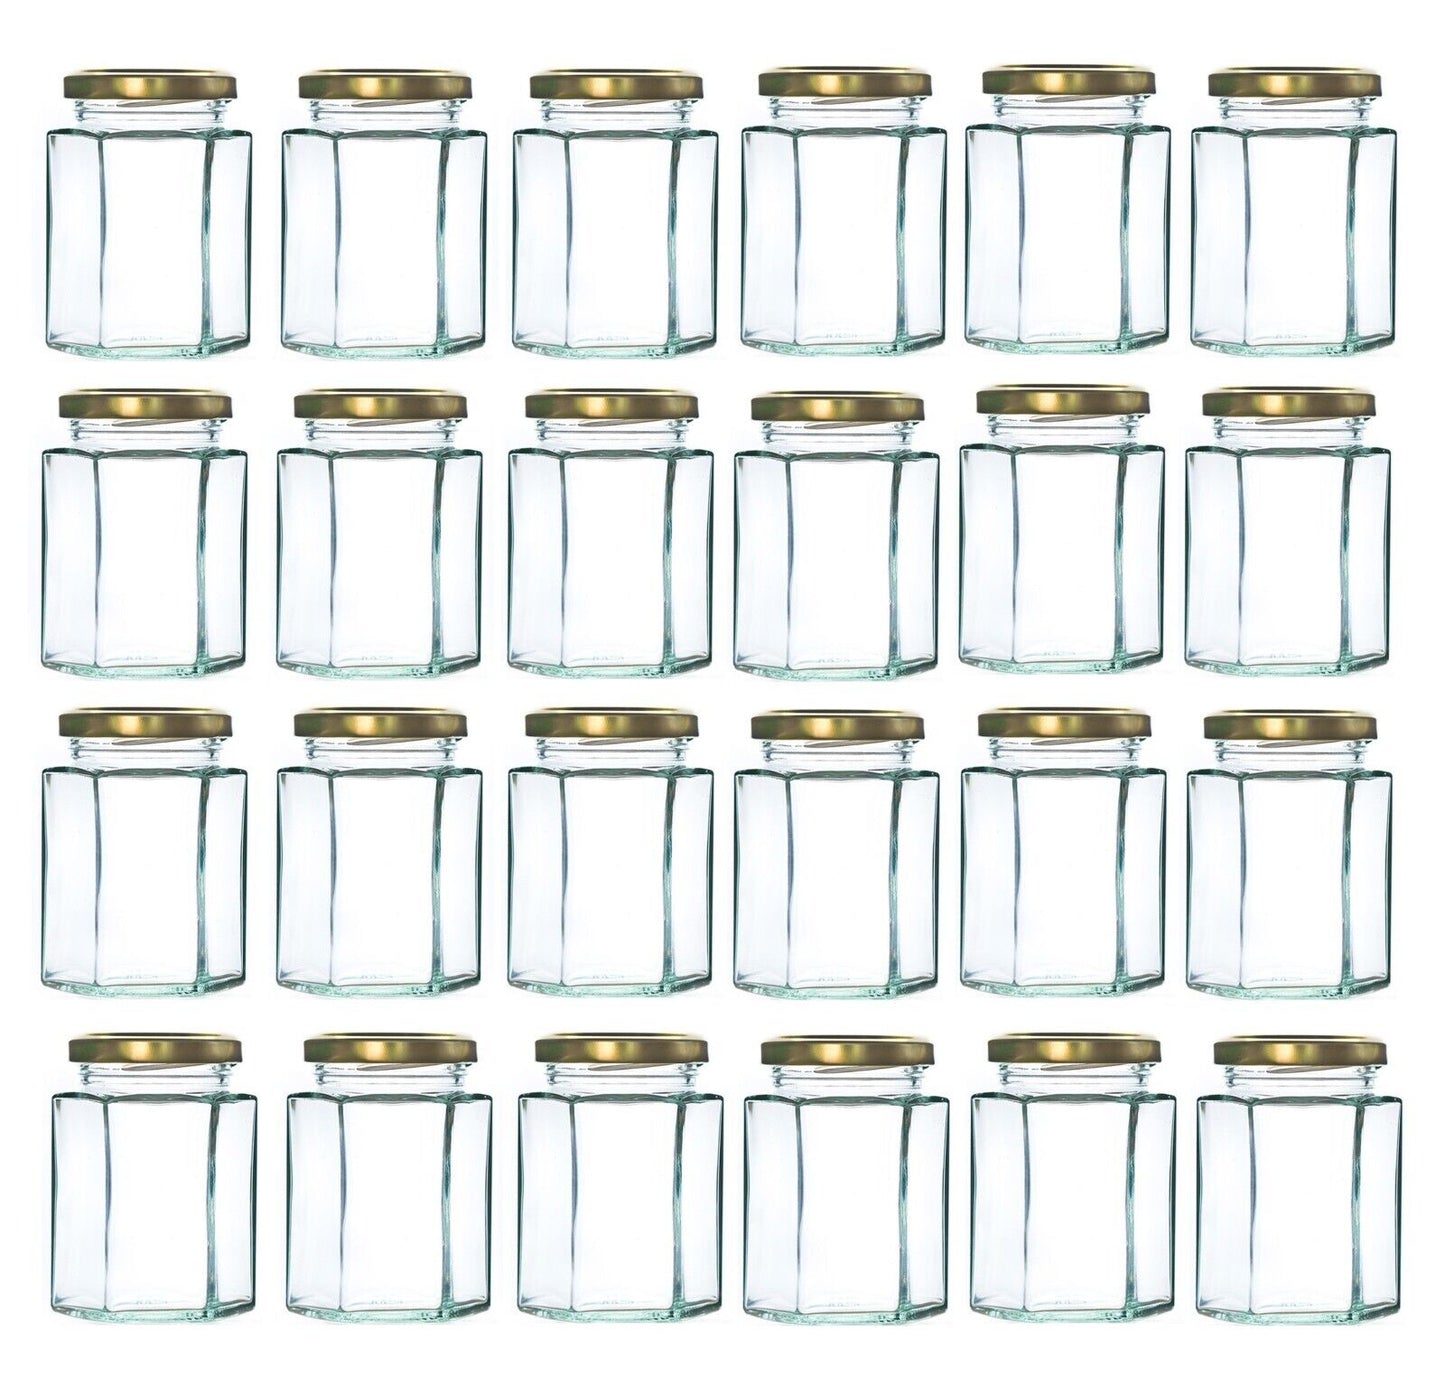 24 x 280ml Hexagonal Glass Jars 340g Empty Storage Jars with Gold Lid